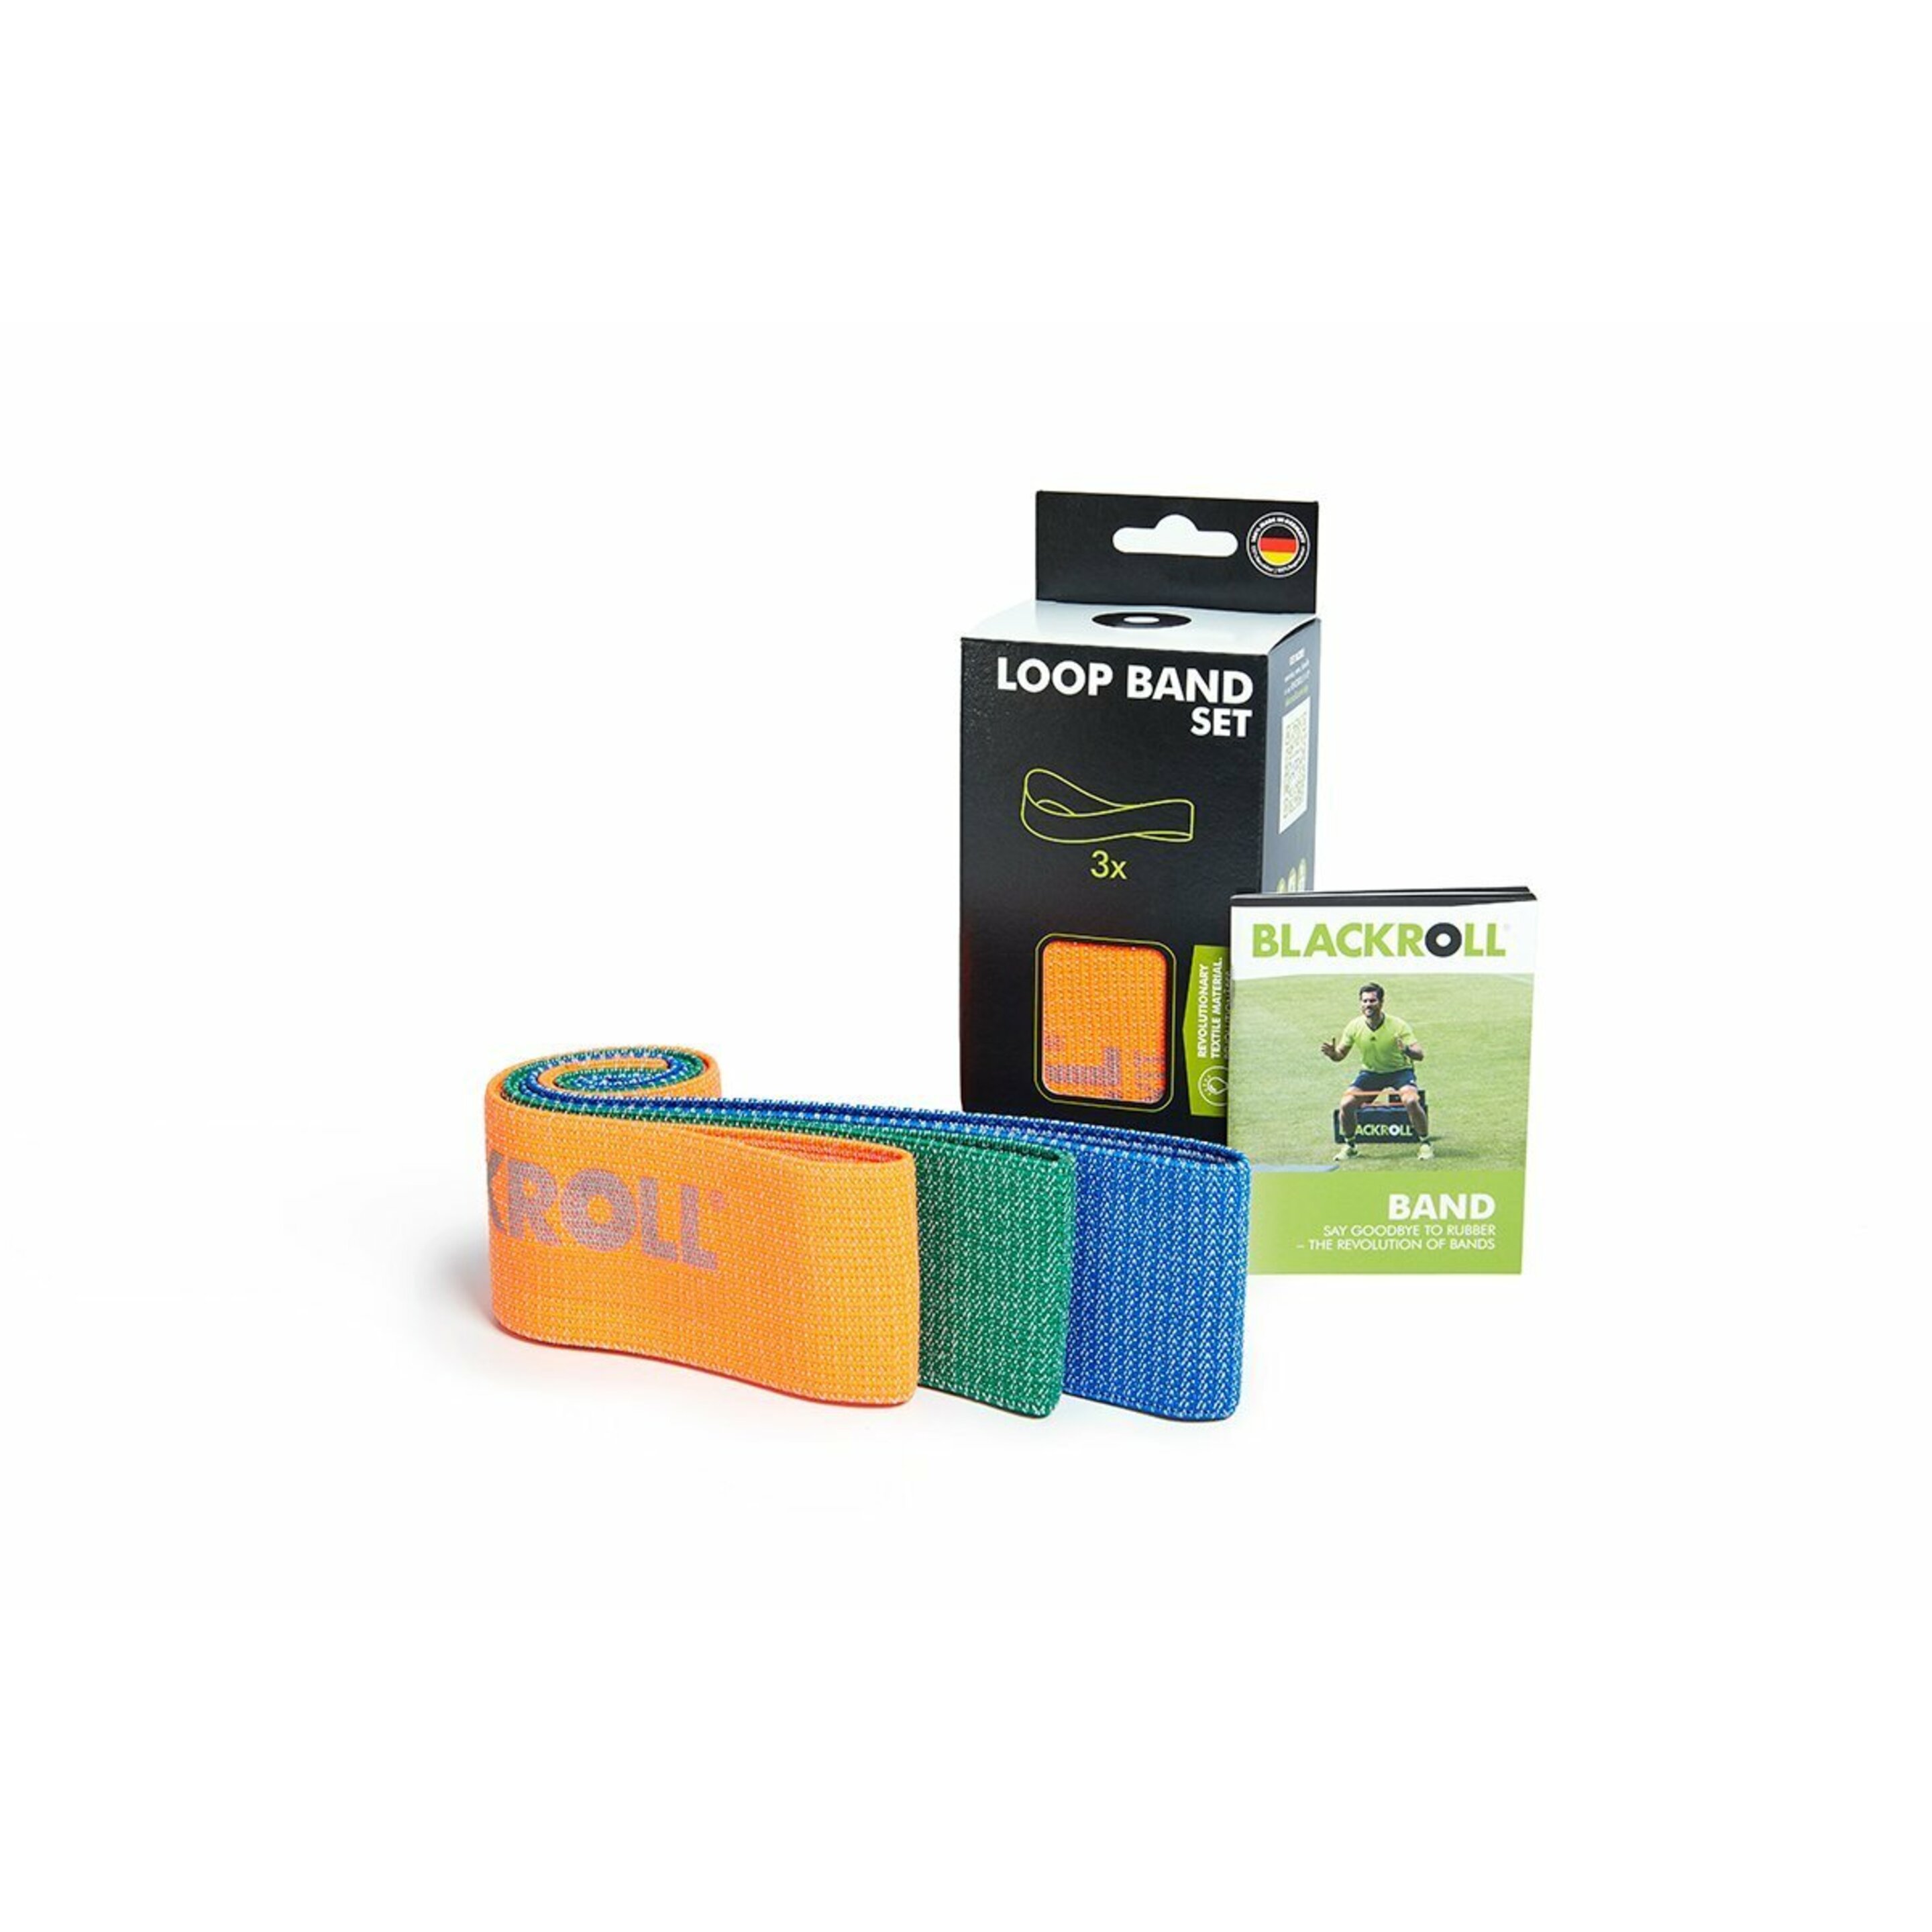 Bandas Elásticas De Material Textil Super-resistentes Blackroll® Loopband (30 Cm) - naranja-verde - 